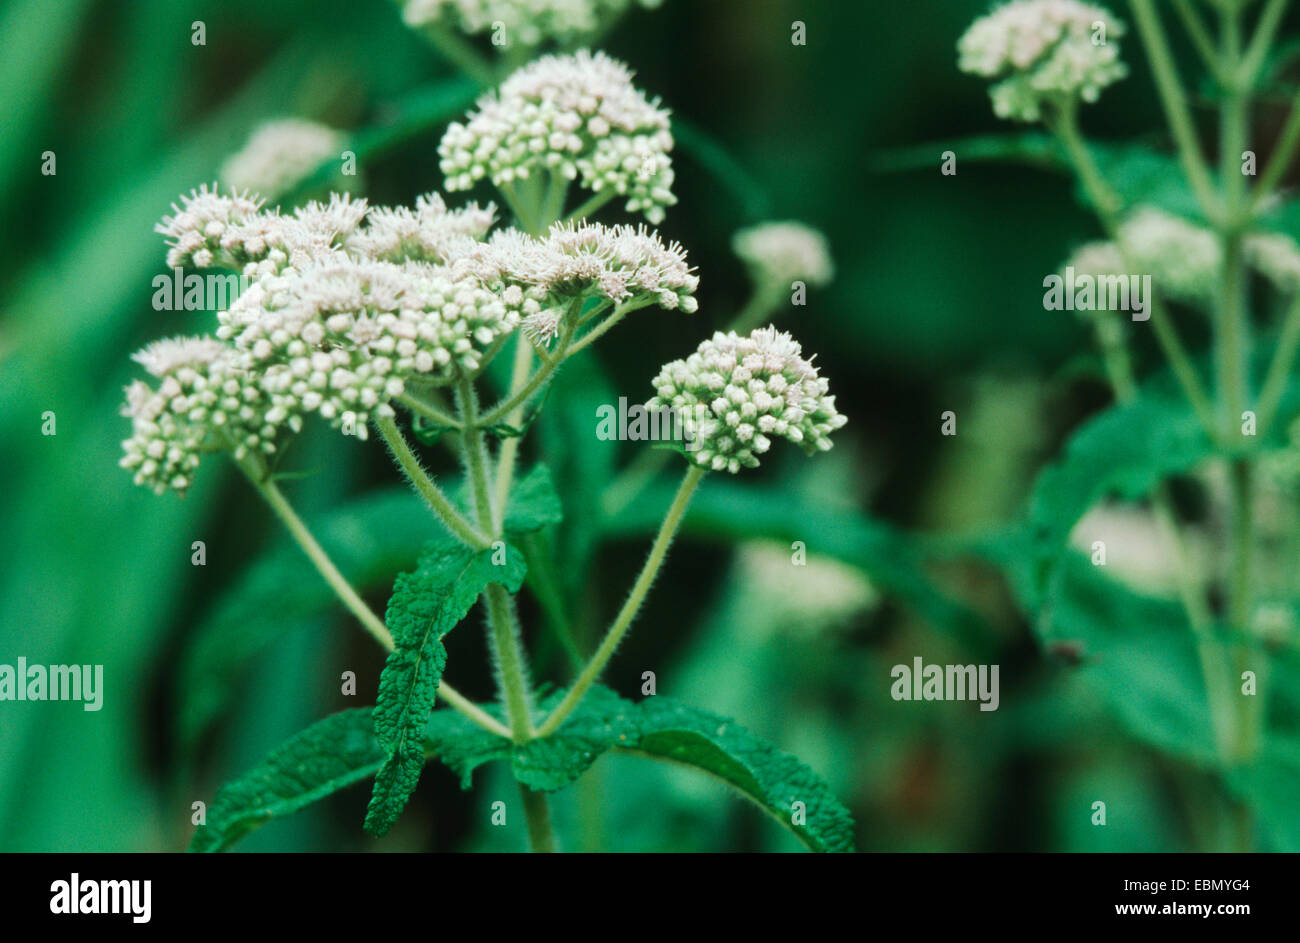 boneset, thoroughwort, common boneset (Eupatorium perfoliatum), blooming plant Stock Photo